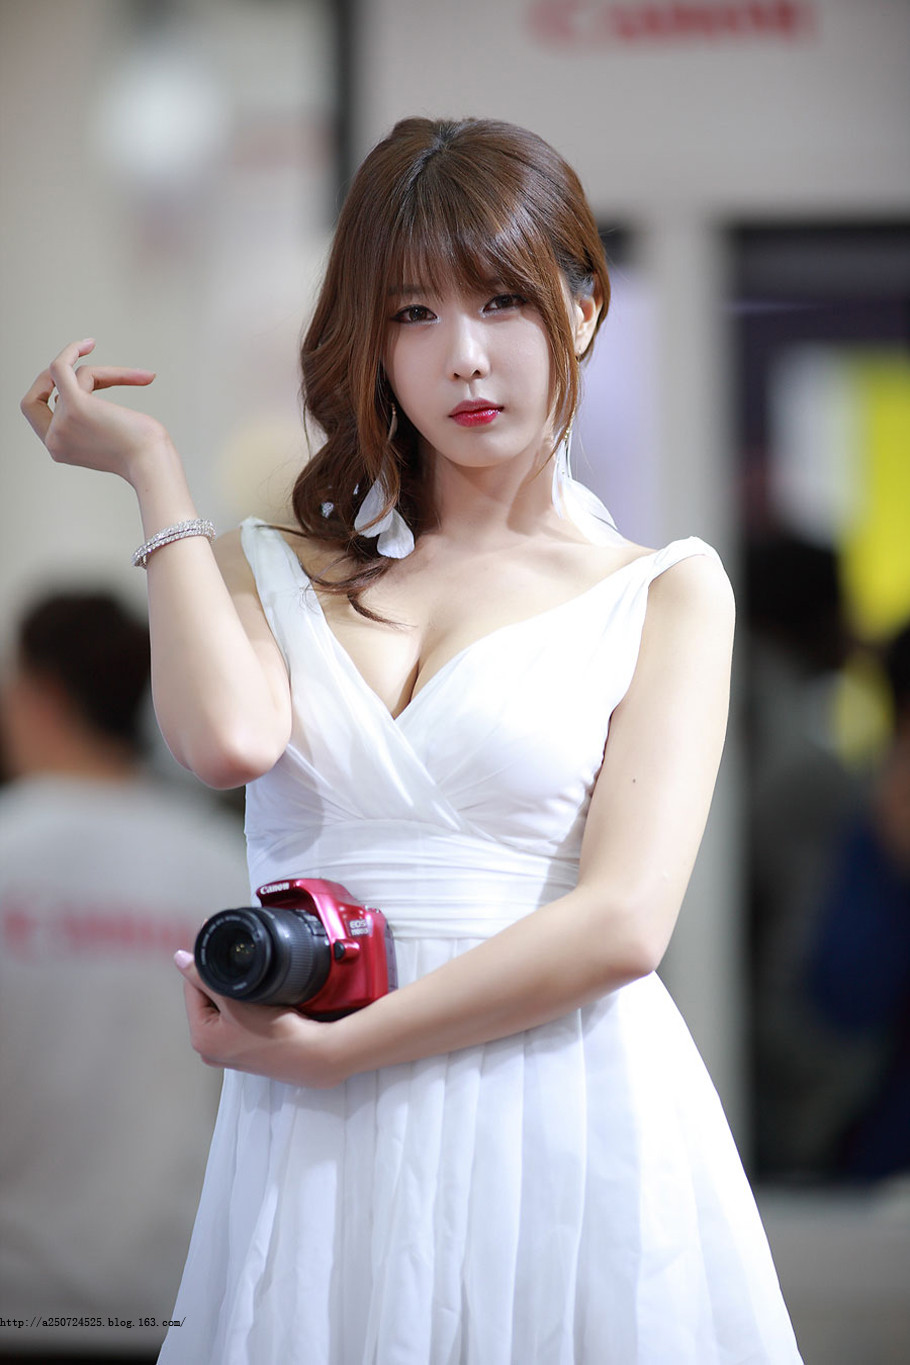 韩国美女车模一袭白裙极品粉嫩軳600张美女写真图片